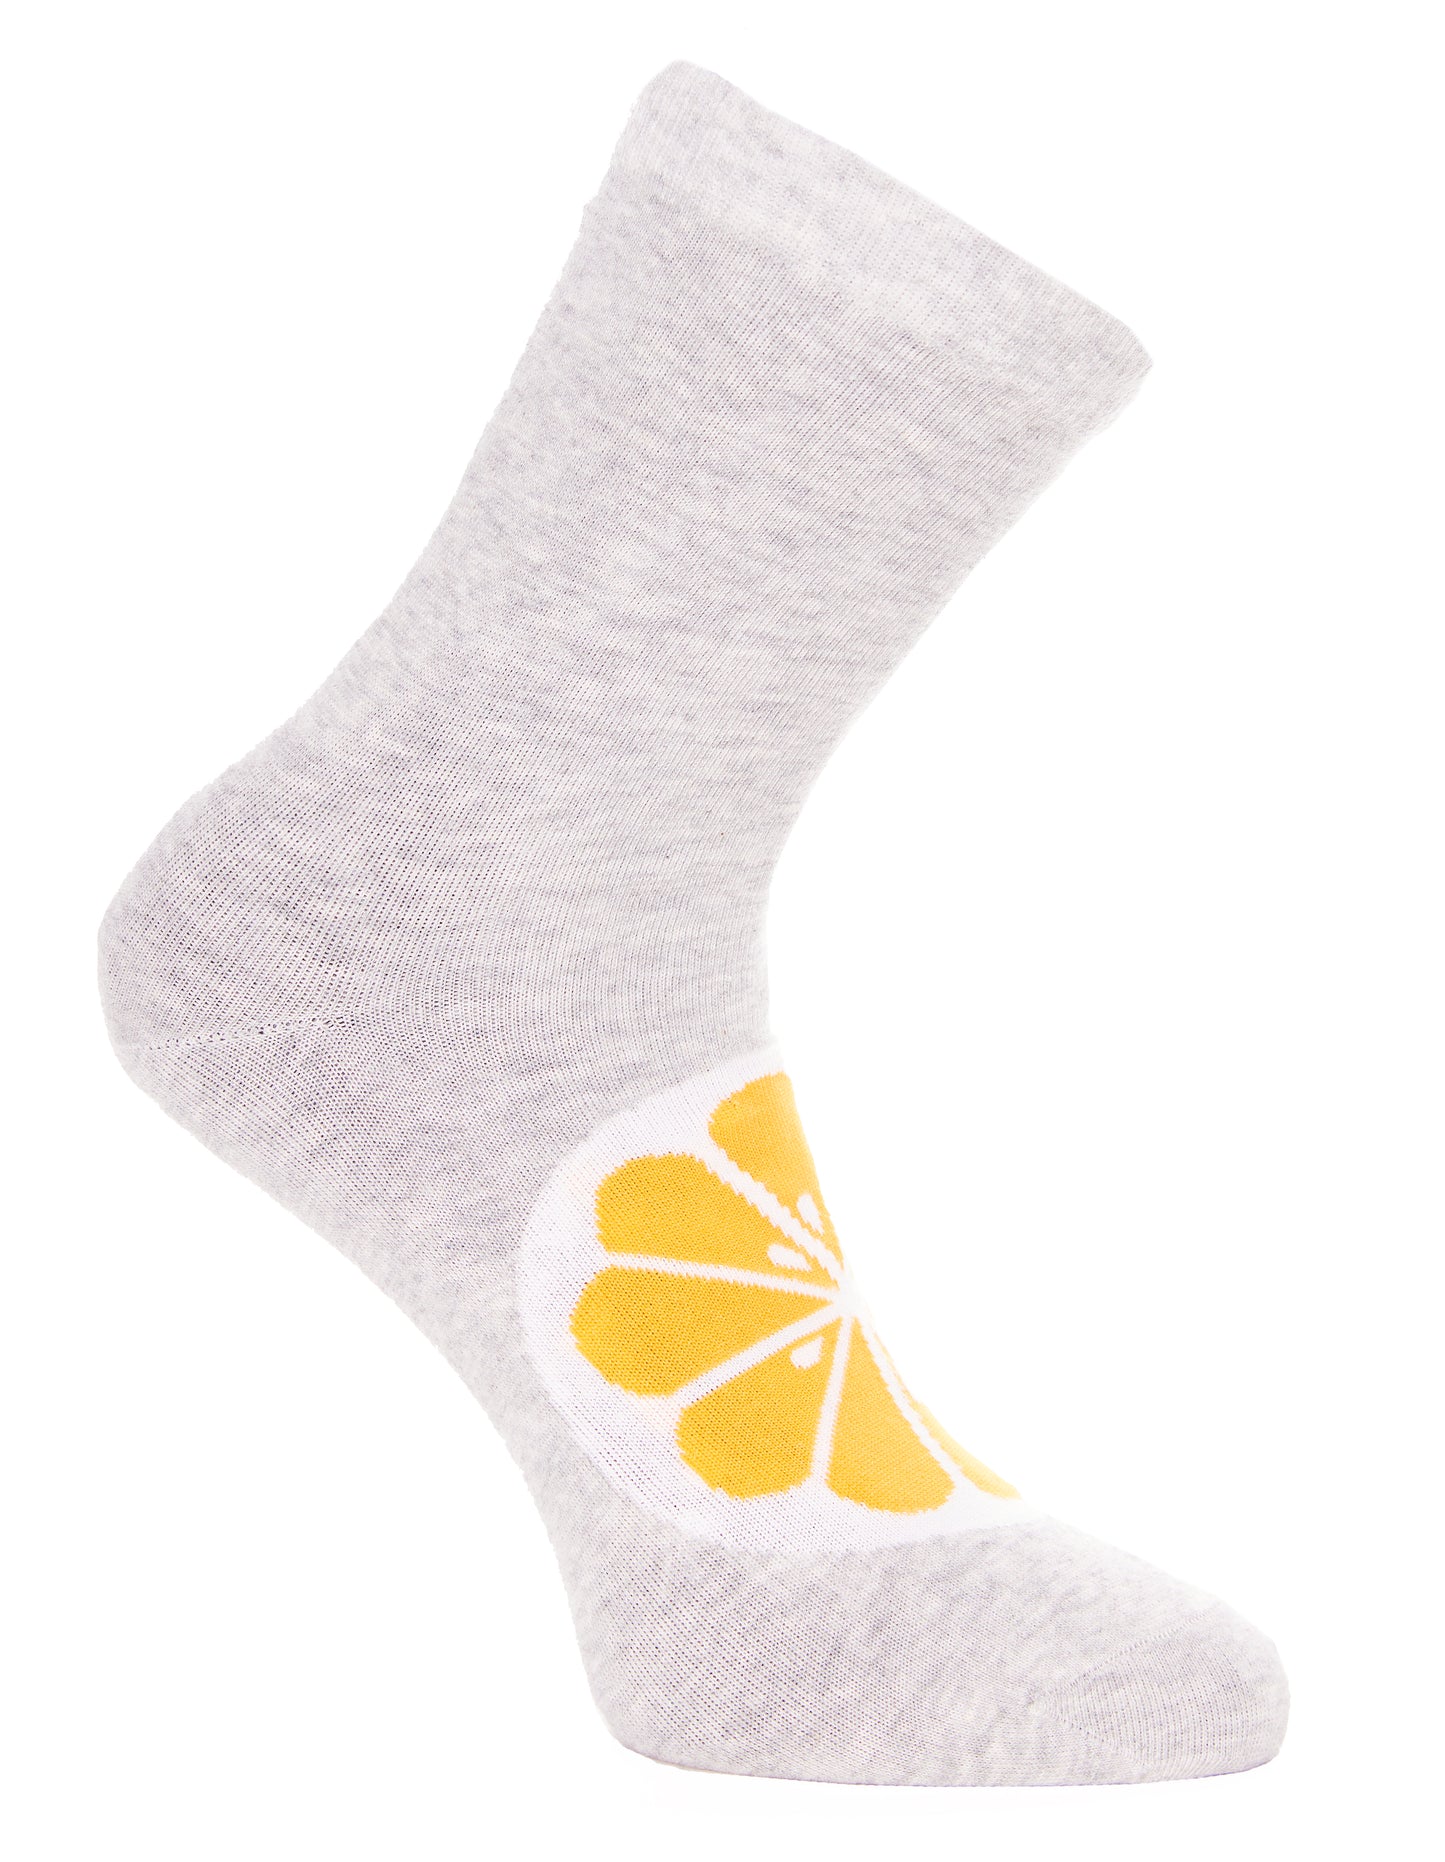 Simon de Winter - Fruit Socks Gift Pack